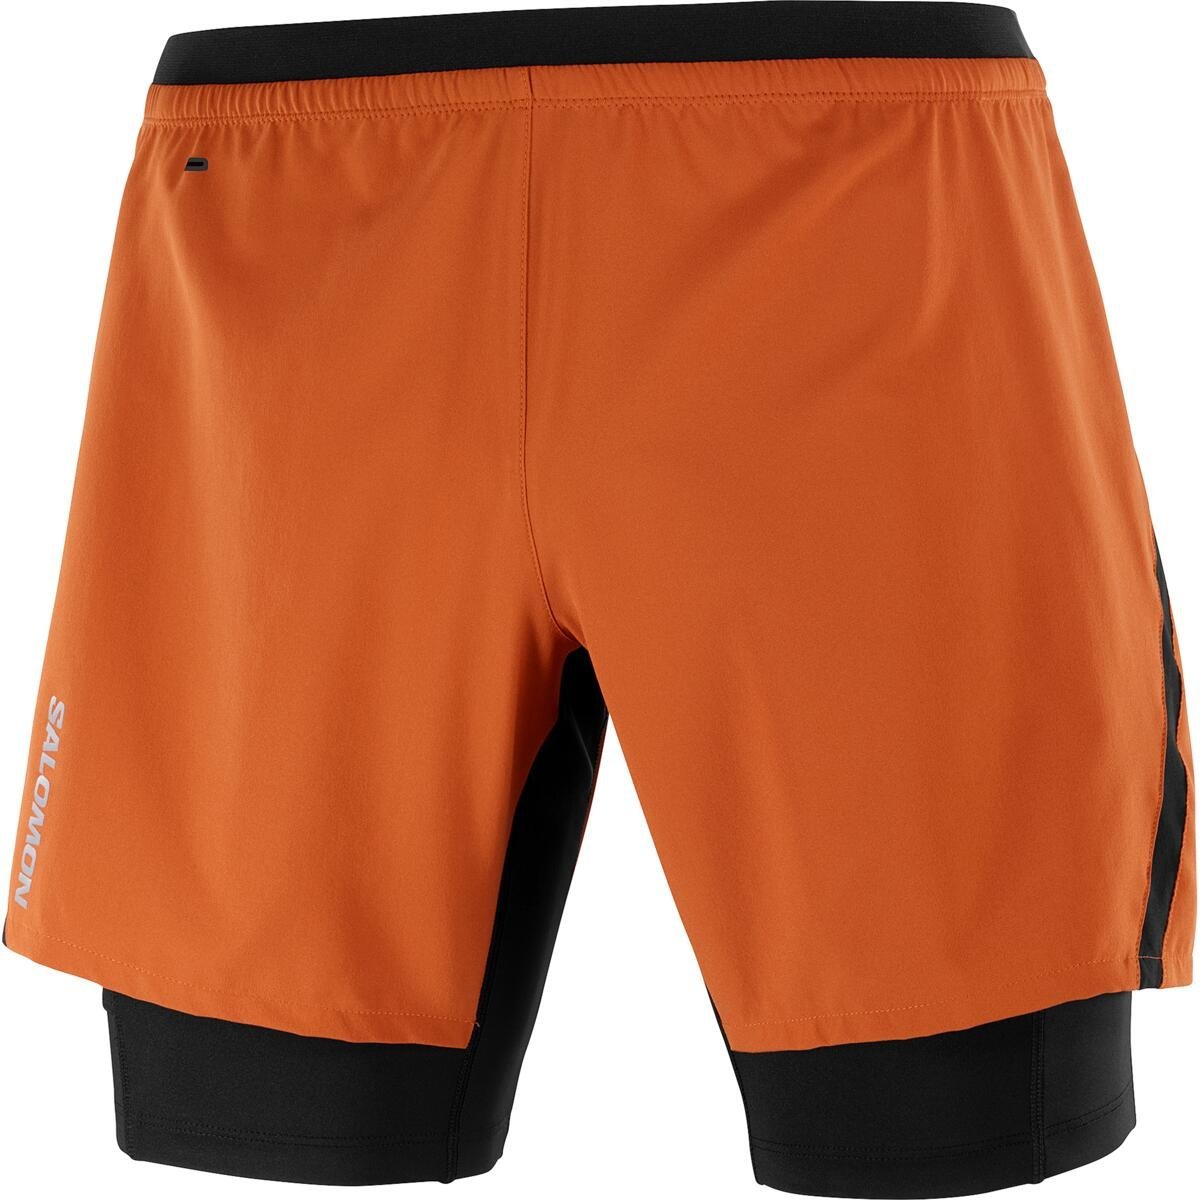 Šortky Salomon Cross TW Shorts M - oranžová